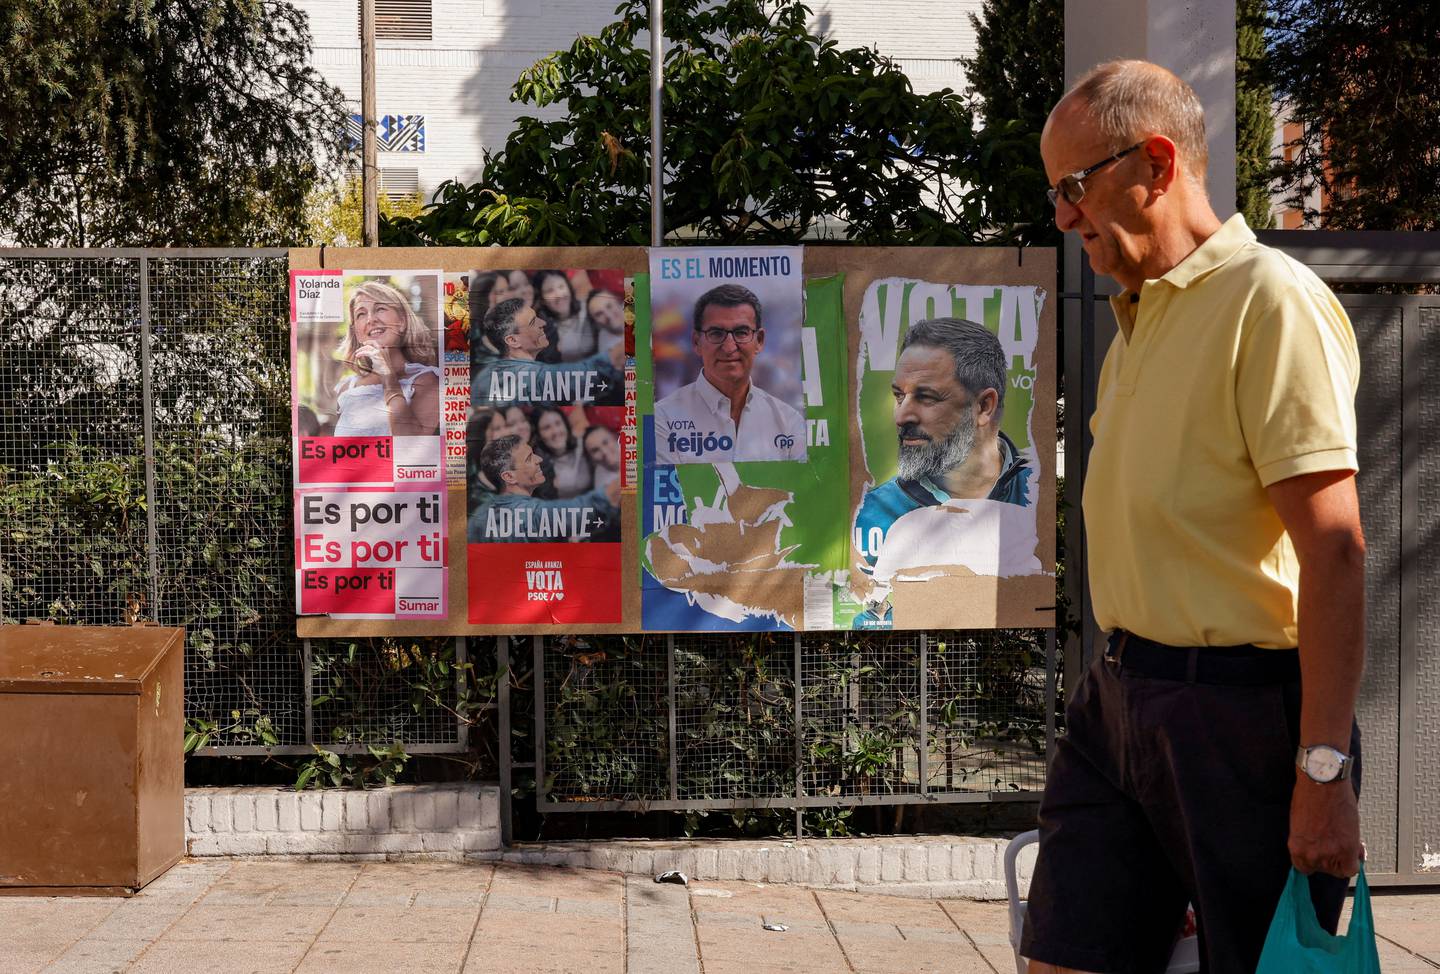 Valgkamplakater med bilde av lederne for Spanias fire største partier.